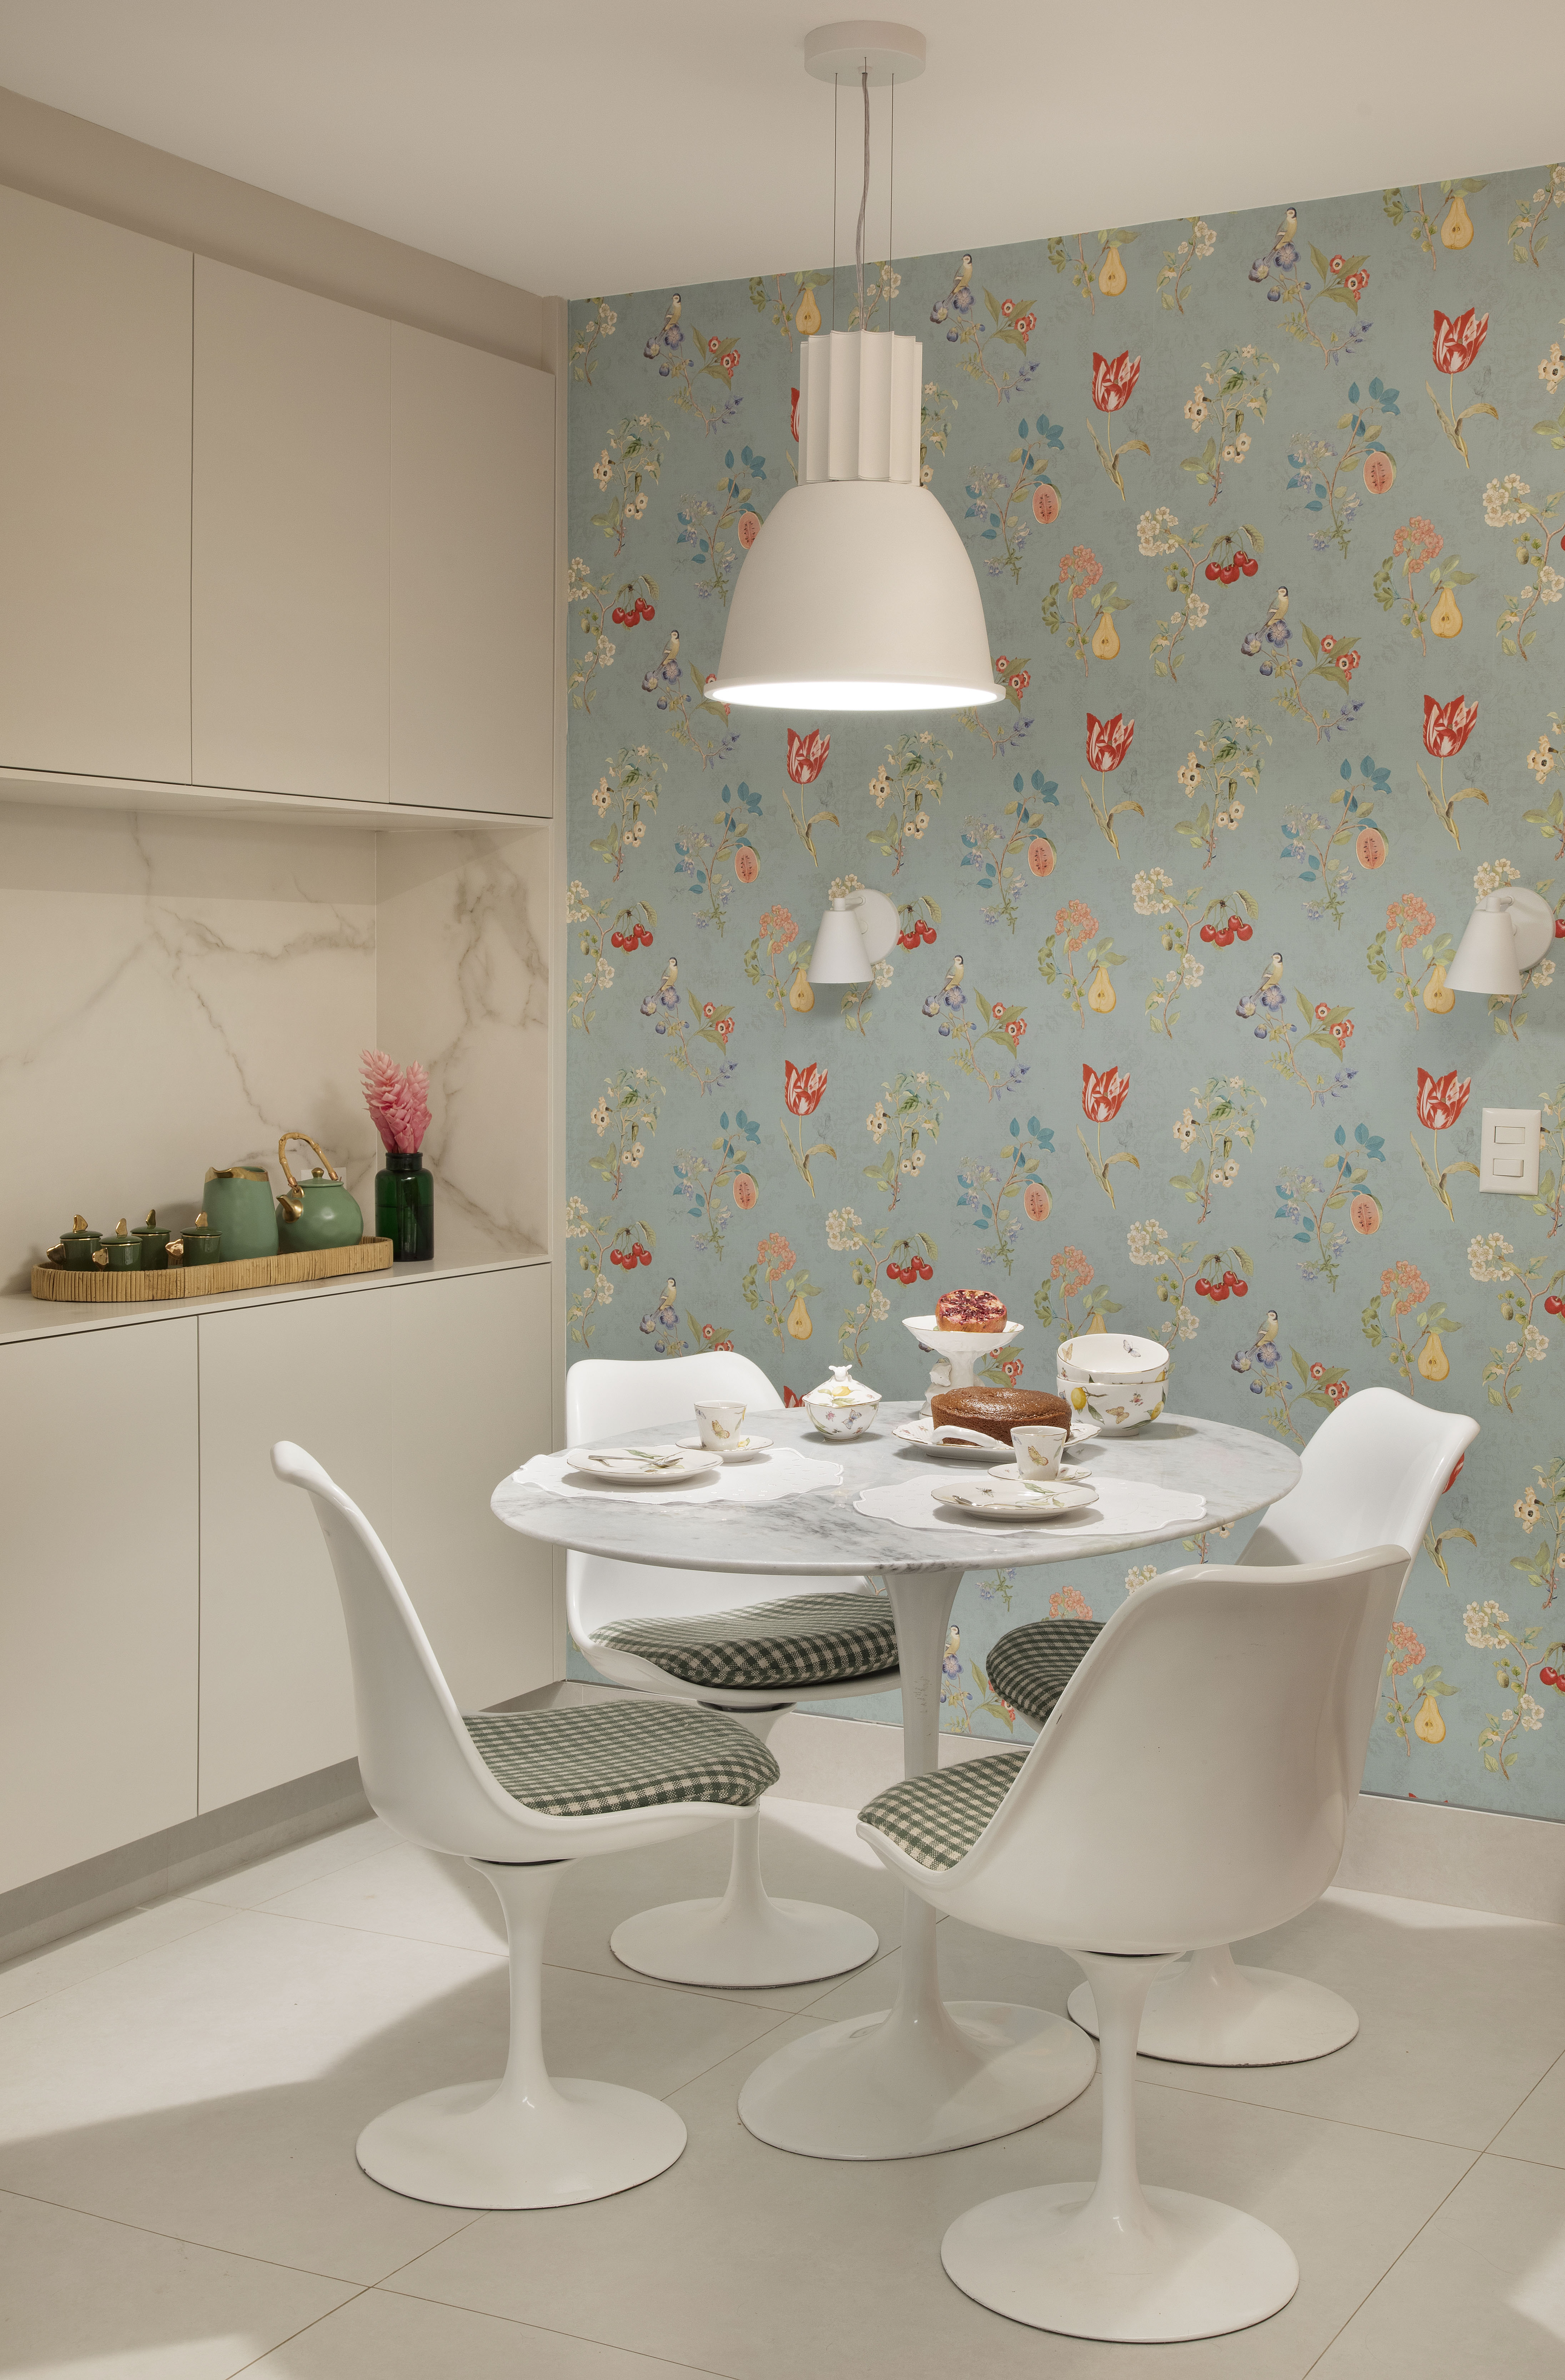 Projeto de Bianca Da Hora. Na foto, cozinha com copa, mesa redonda branca e papel de parede floral.